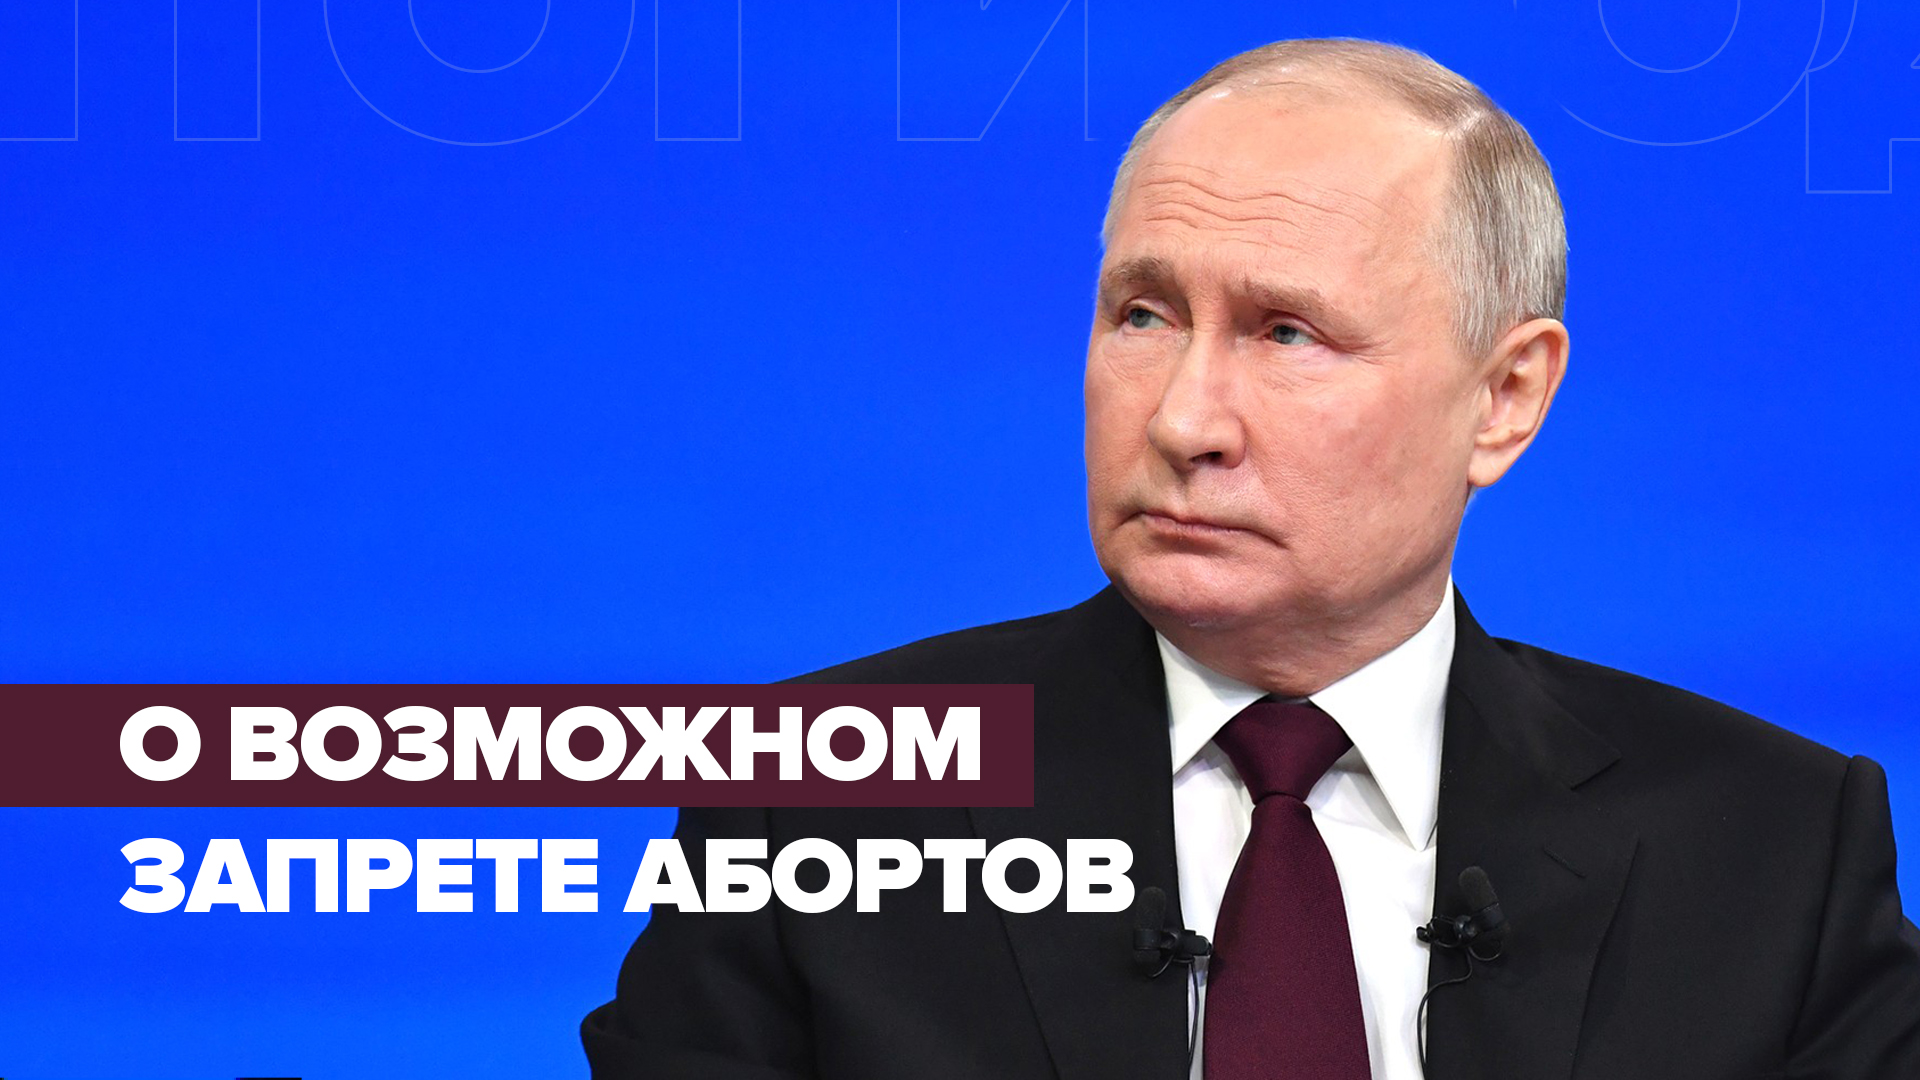 Никакой «вакханалии» нет: Путин — об идее запрета абортов в частных клиниках